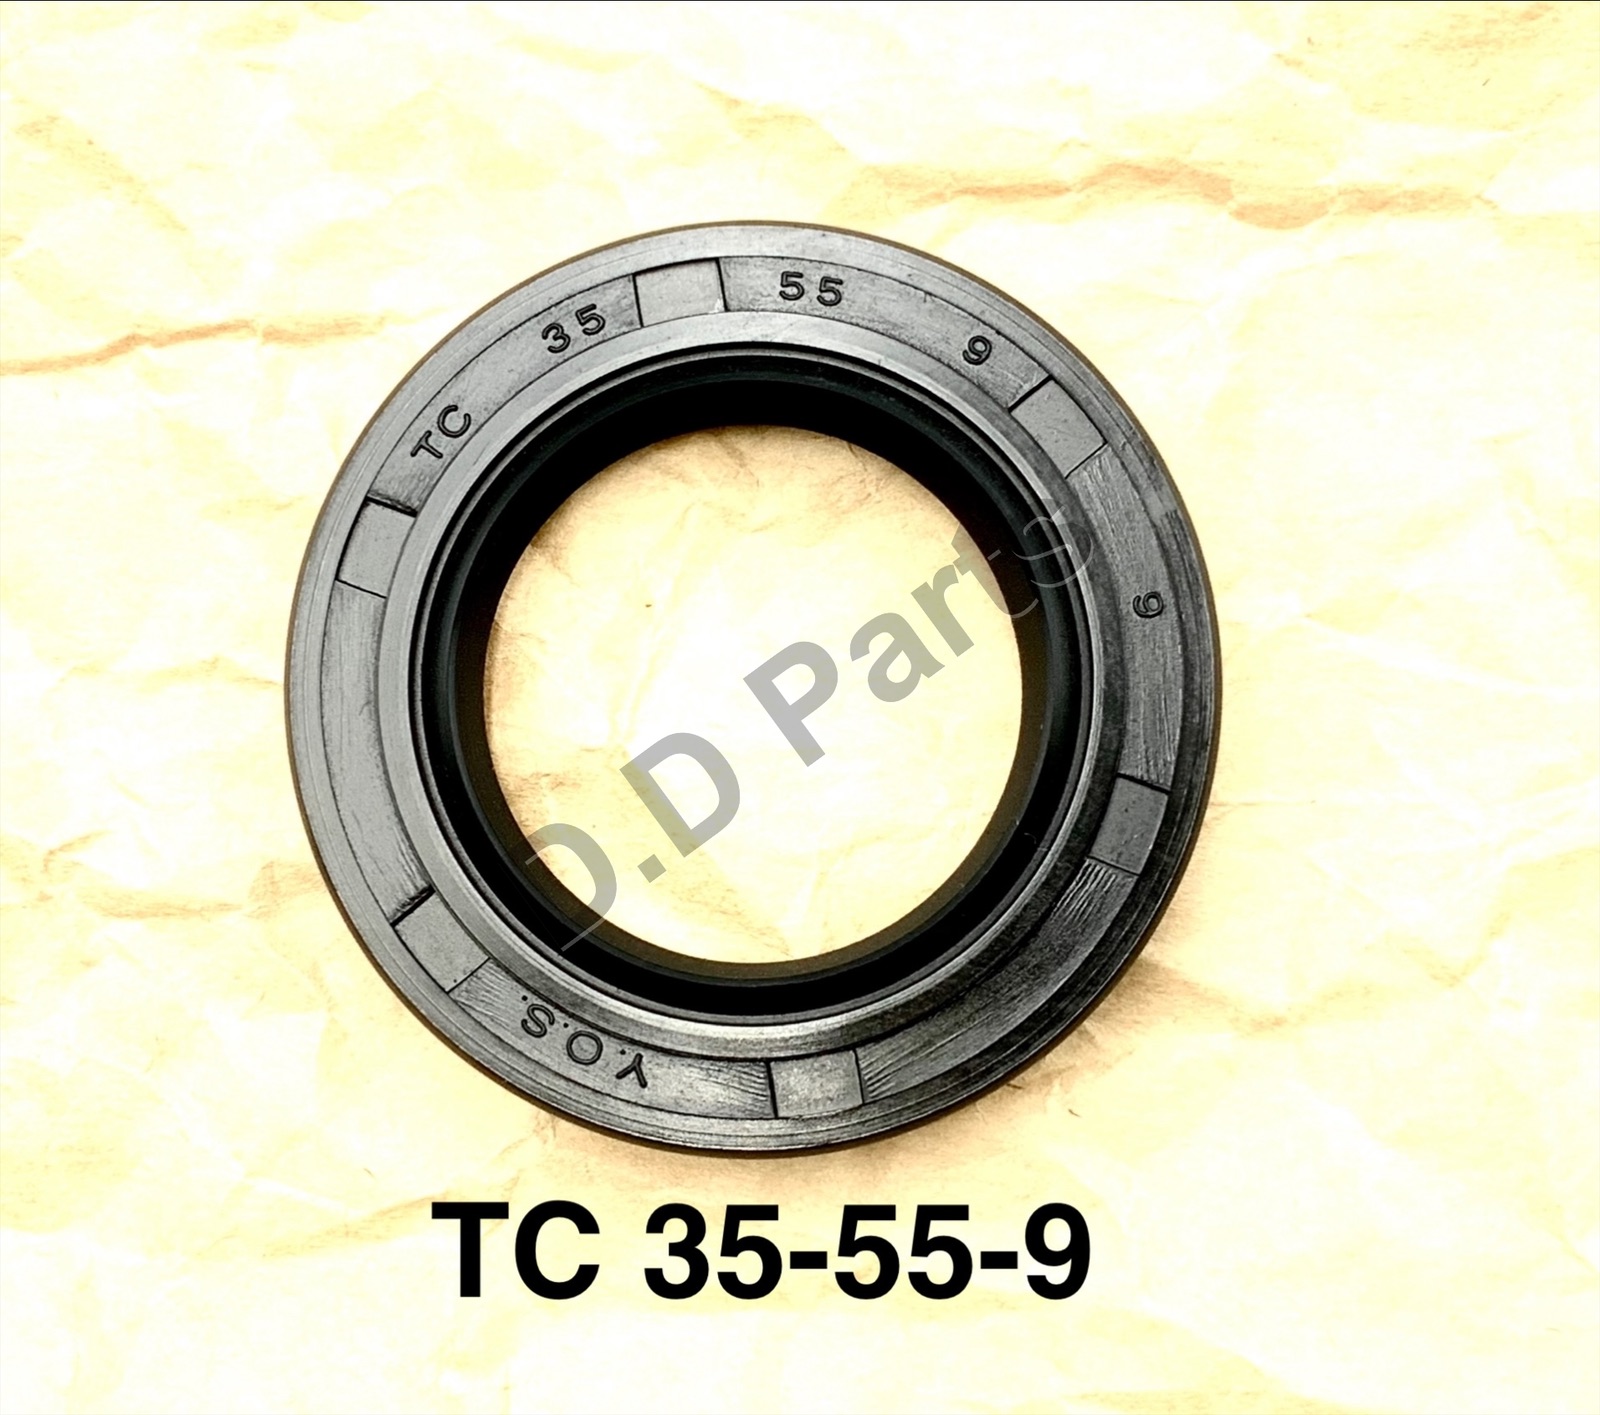 ซีลยางกันน้ำมัน TC 35-55-9 (วงนอก 55 mm/ วงใน 35 mm/ หนา 9 mm)